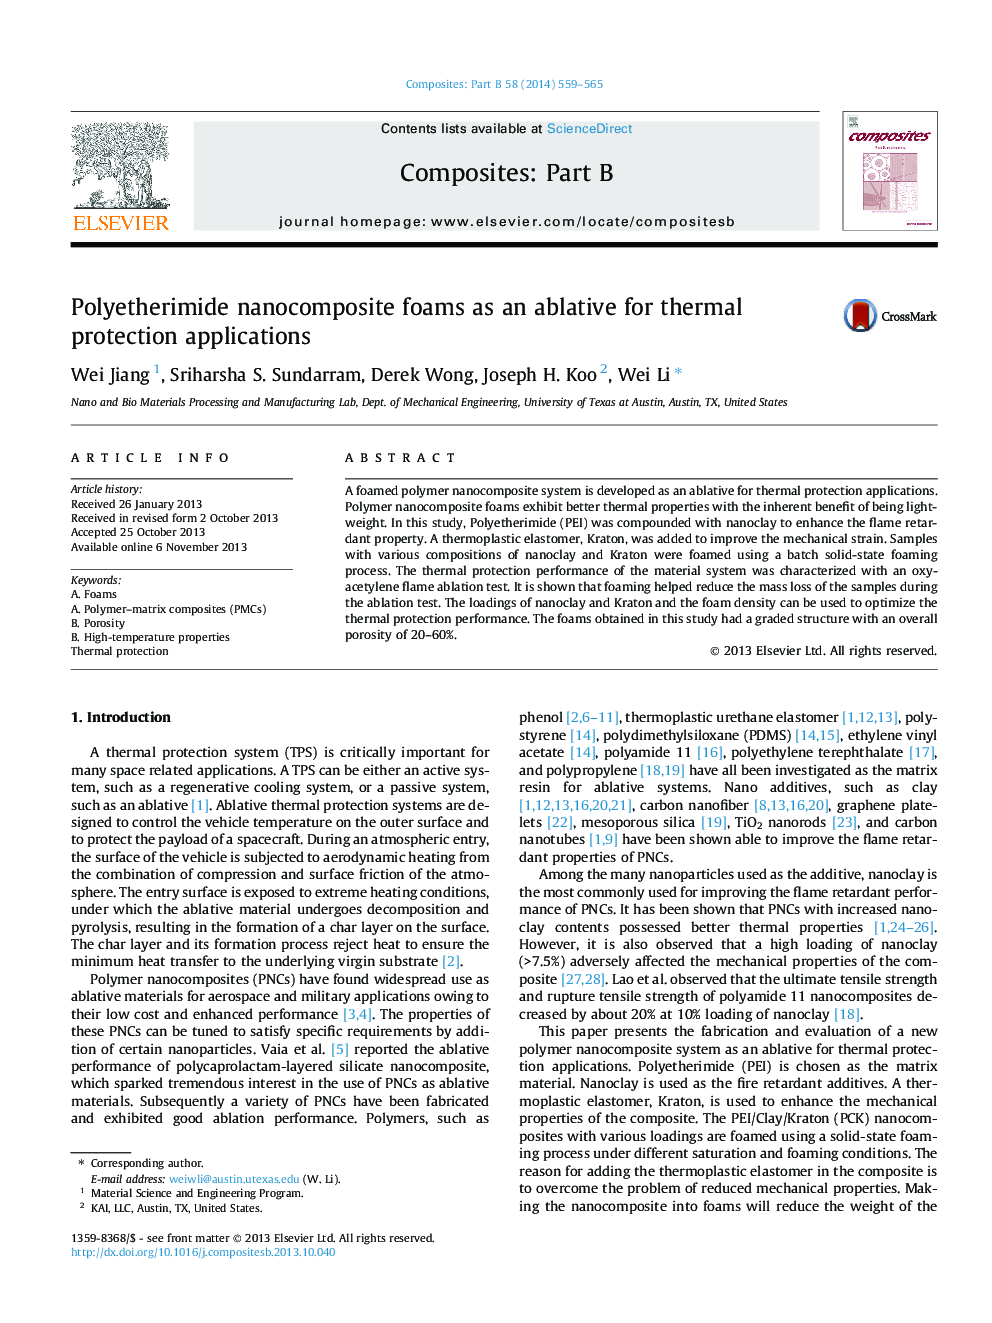 فوم های نانوکامپوزیت پلی اتیل آمید به عنوان جایگزینی برای کاربردهای حفاظت حرارتی 